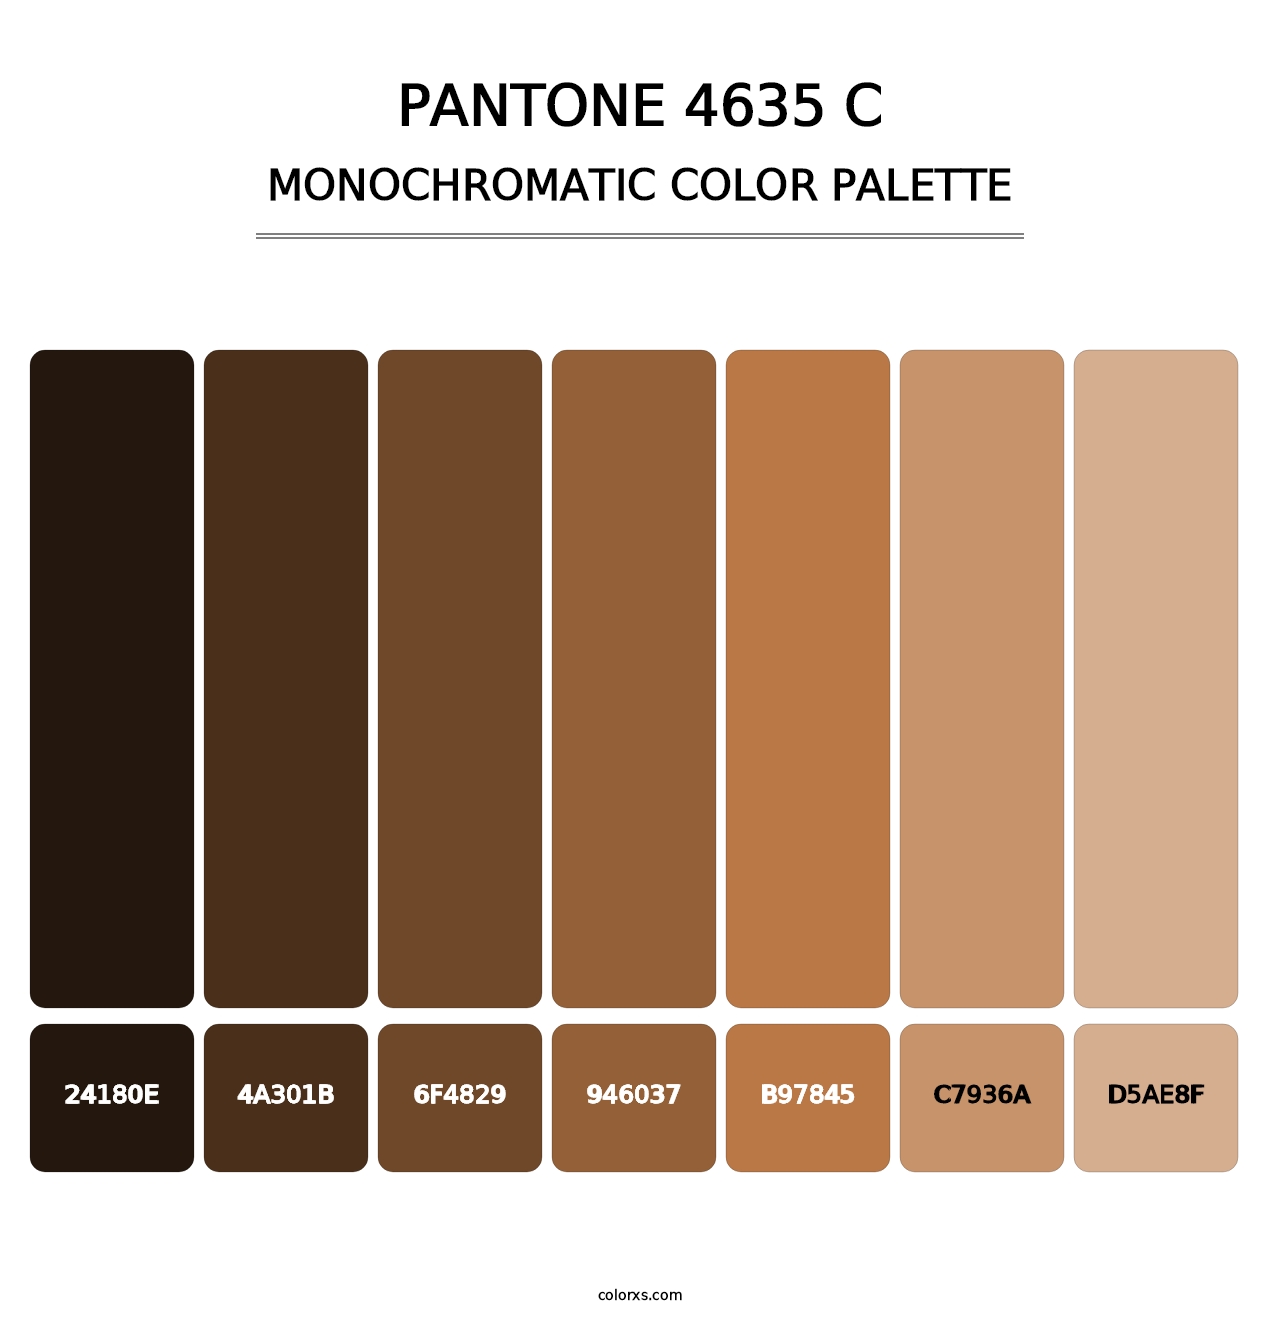 PANTONE 4635 C - Monochromatic Color Palette